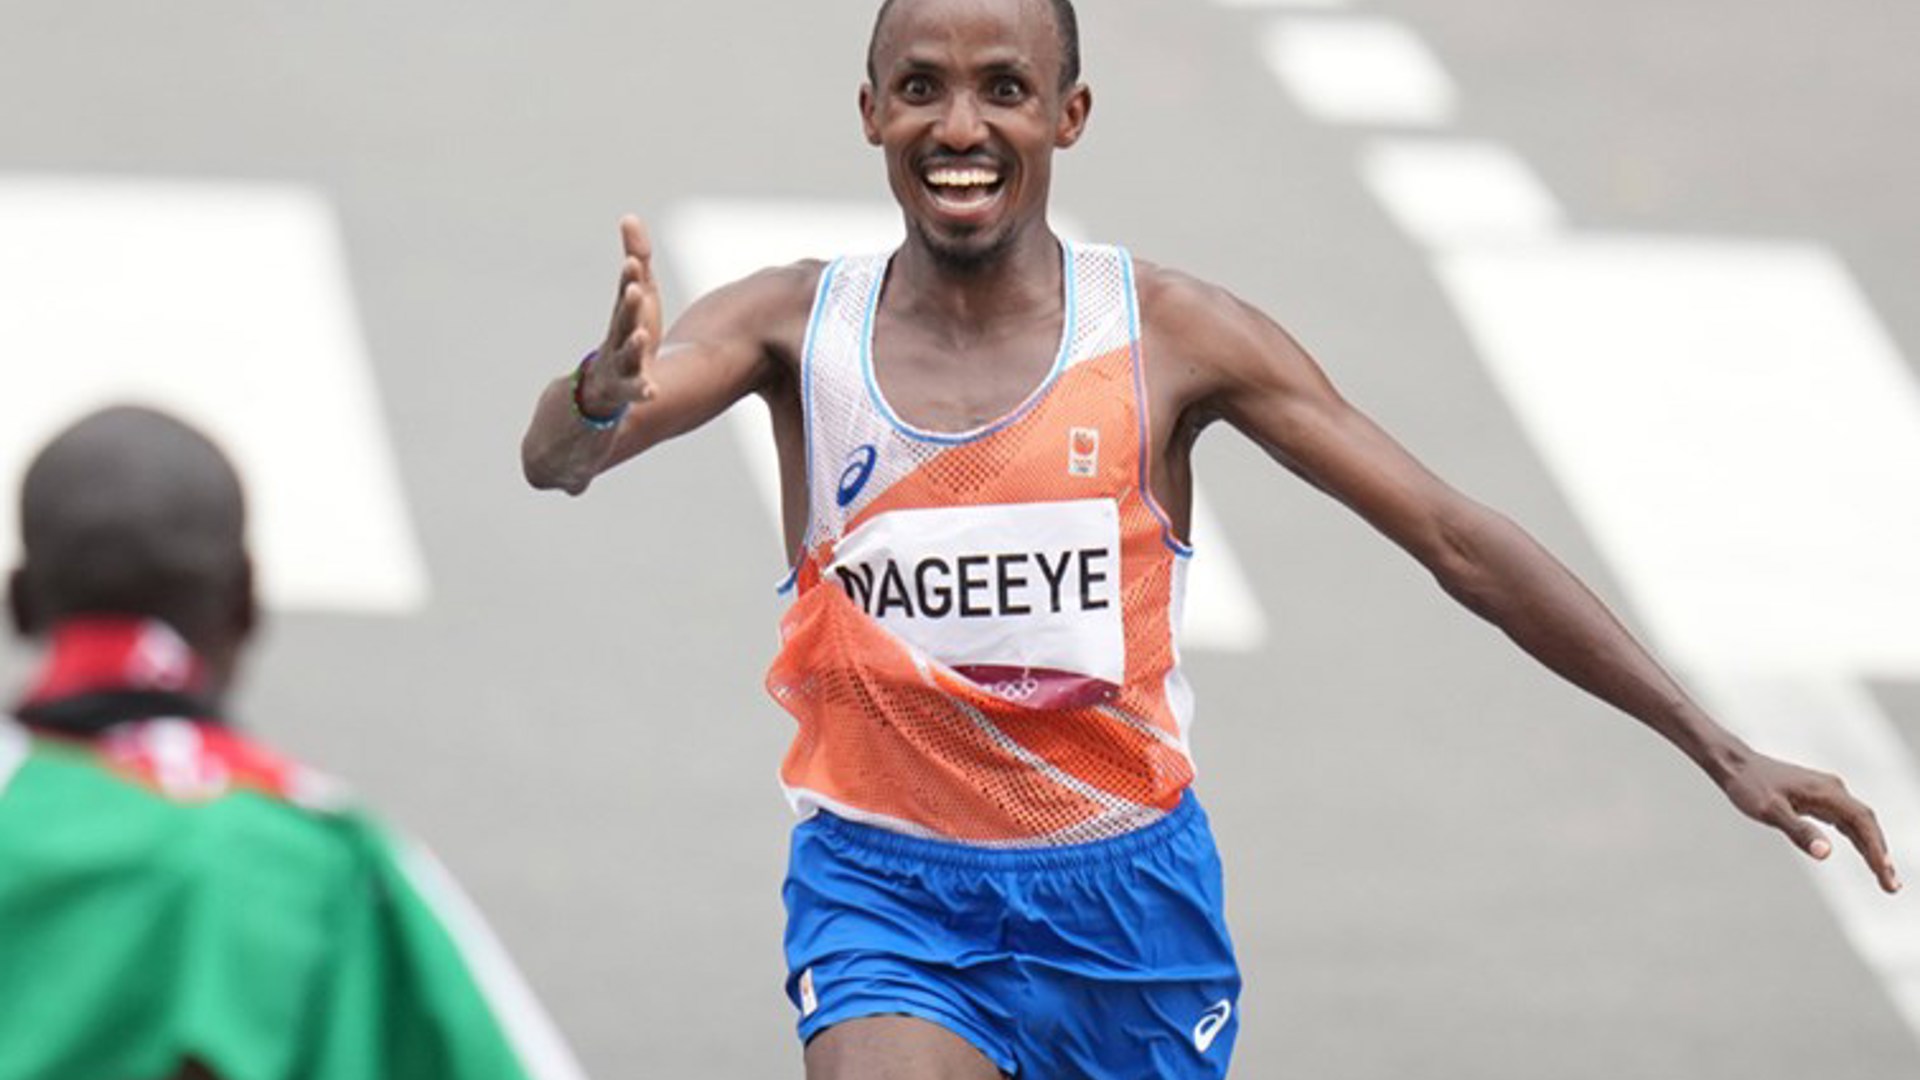 Abdi Nageeye OS 2020 BSR AGENCY 900X590